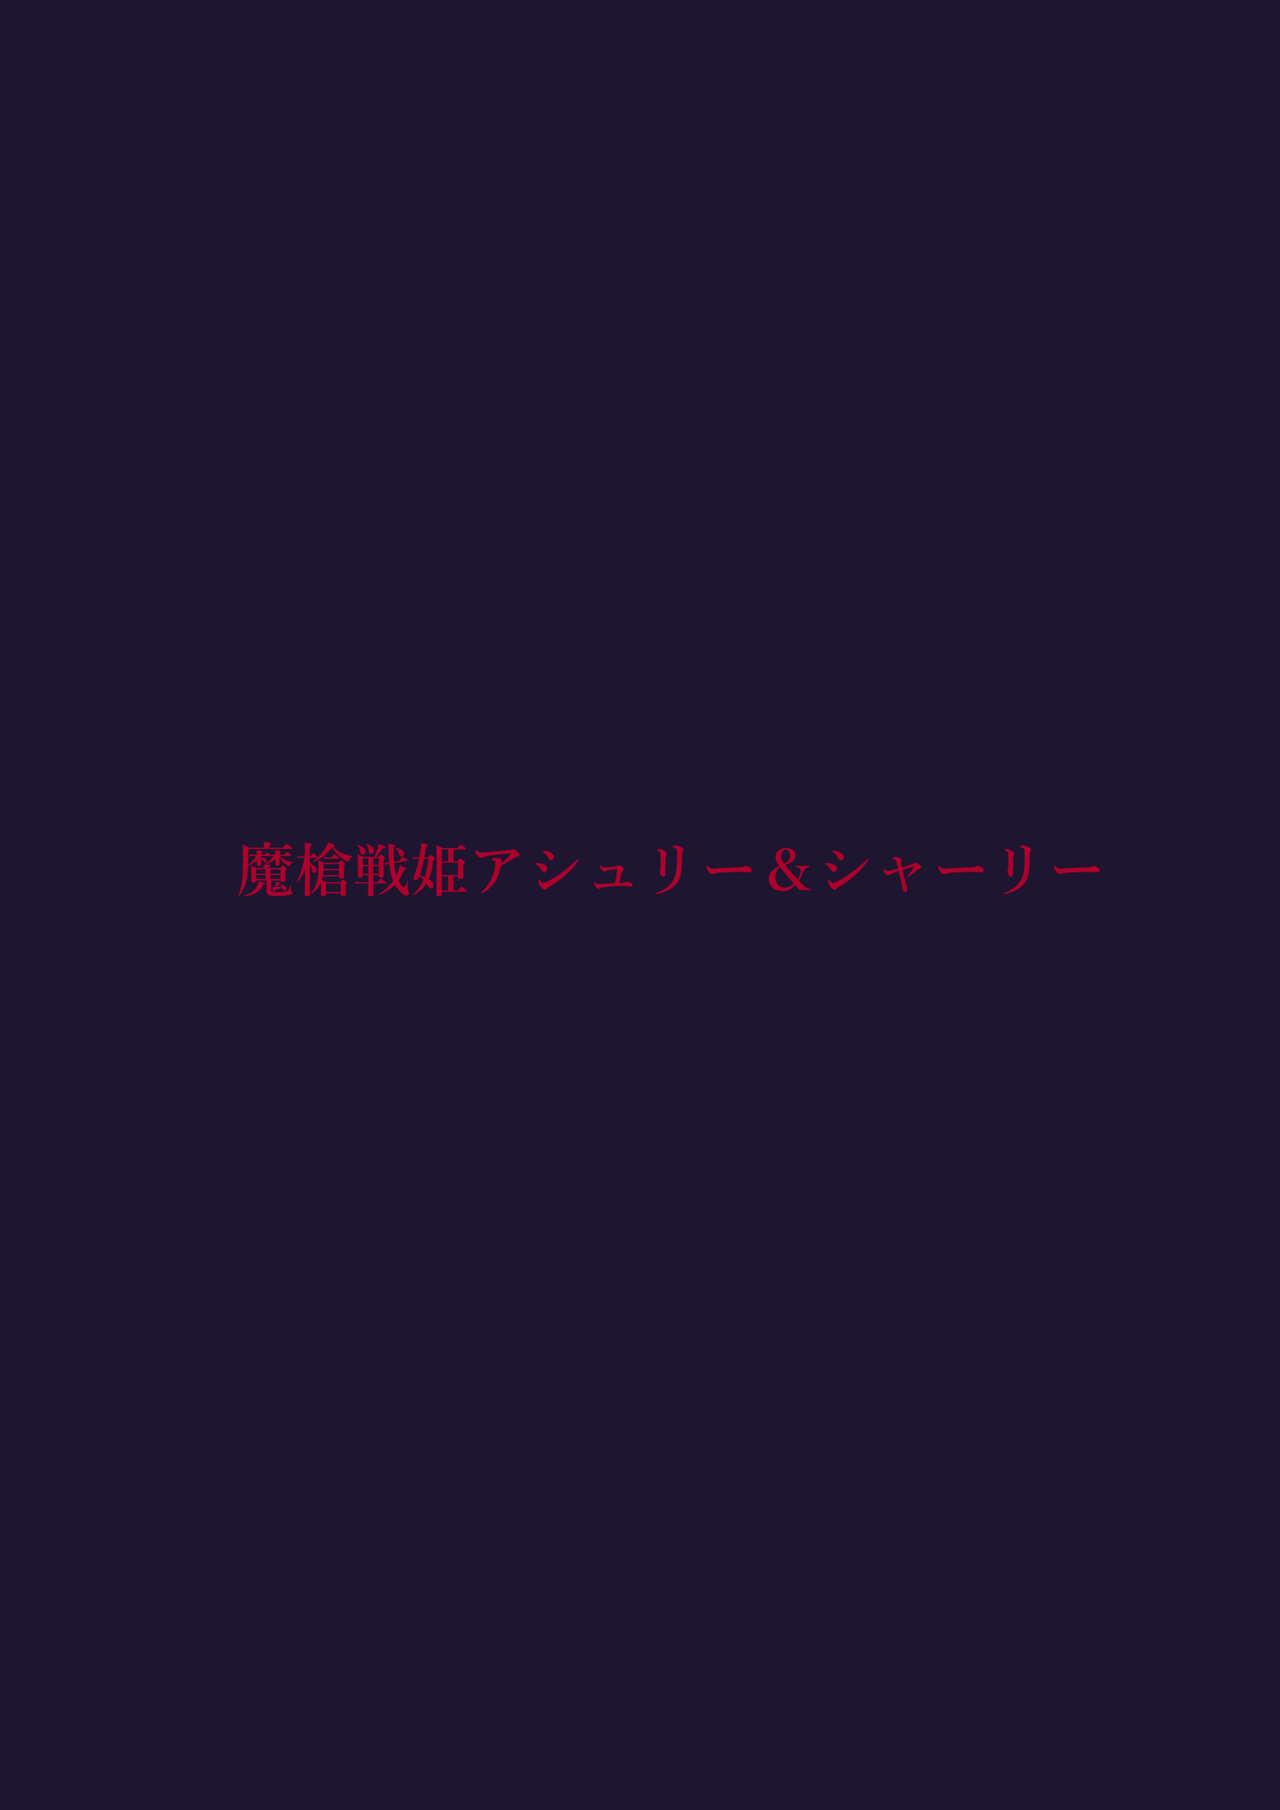 [Satonaka Miharu]Masou Senhime Asyuri-& Sya-ri- Kouhen ～ Asyu Tyan no Tame Nara Watasi na n Datte Dekiru n da yo～ 40